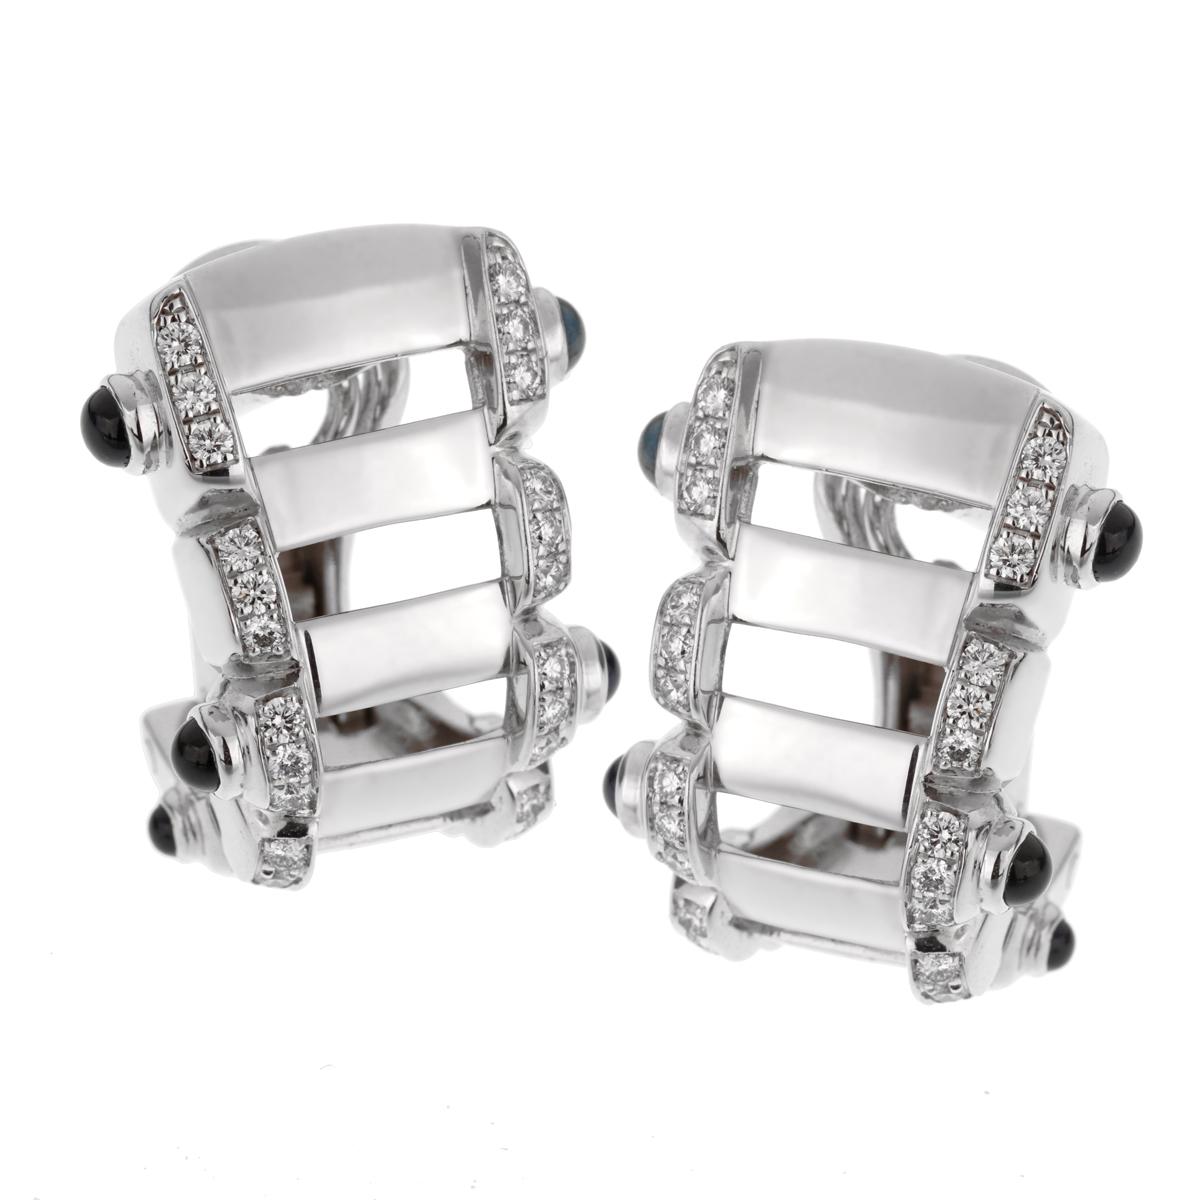 Une paire de boucles d'oreilles Patek Philippe emblématique, composée de 60 diamants ronds de taille brillant, flanqués de saphirs cabochons, le tout en or blanc 18 carats.
Les boucles d'oreilles mesurent 0,78